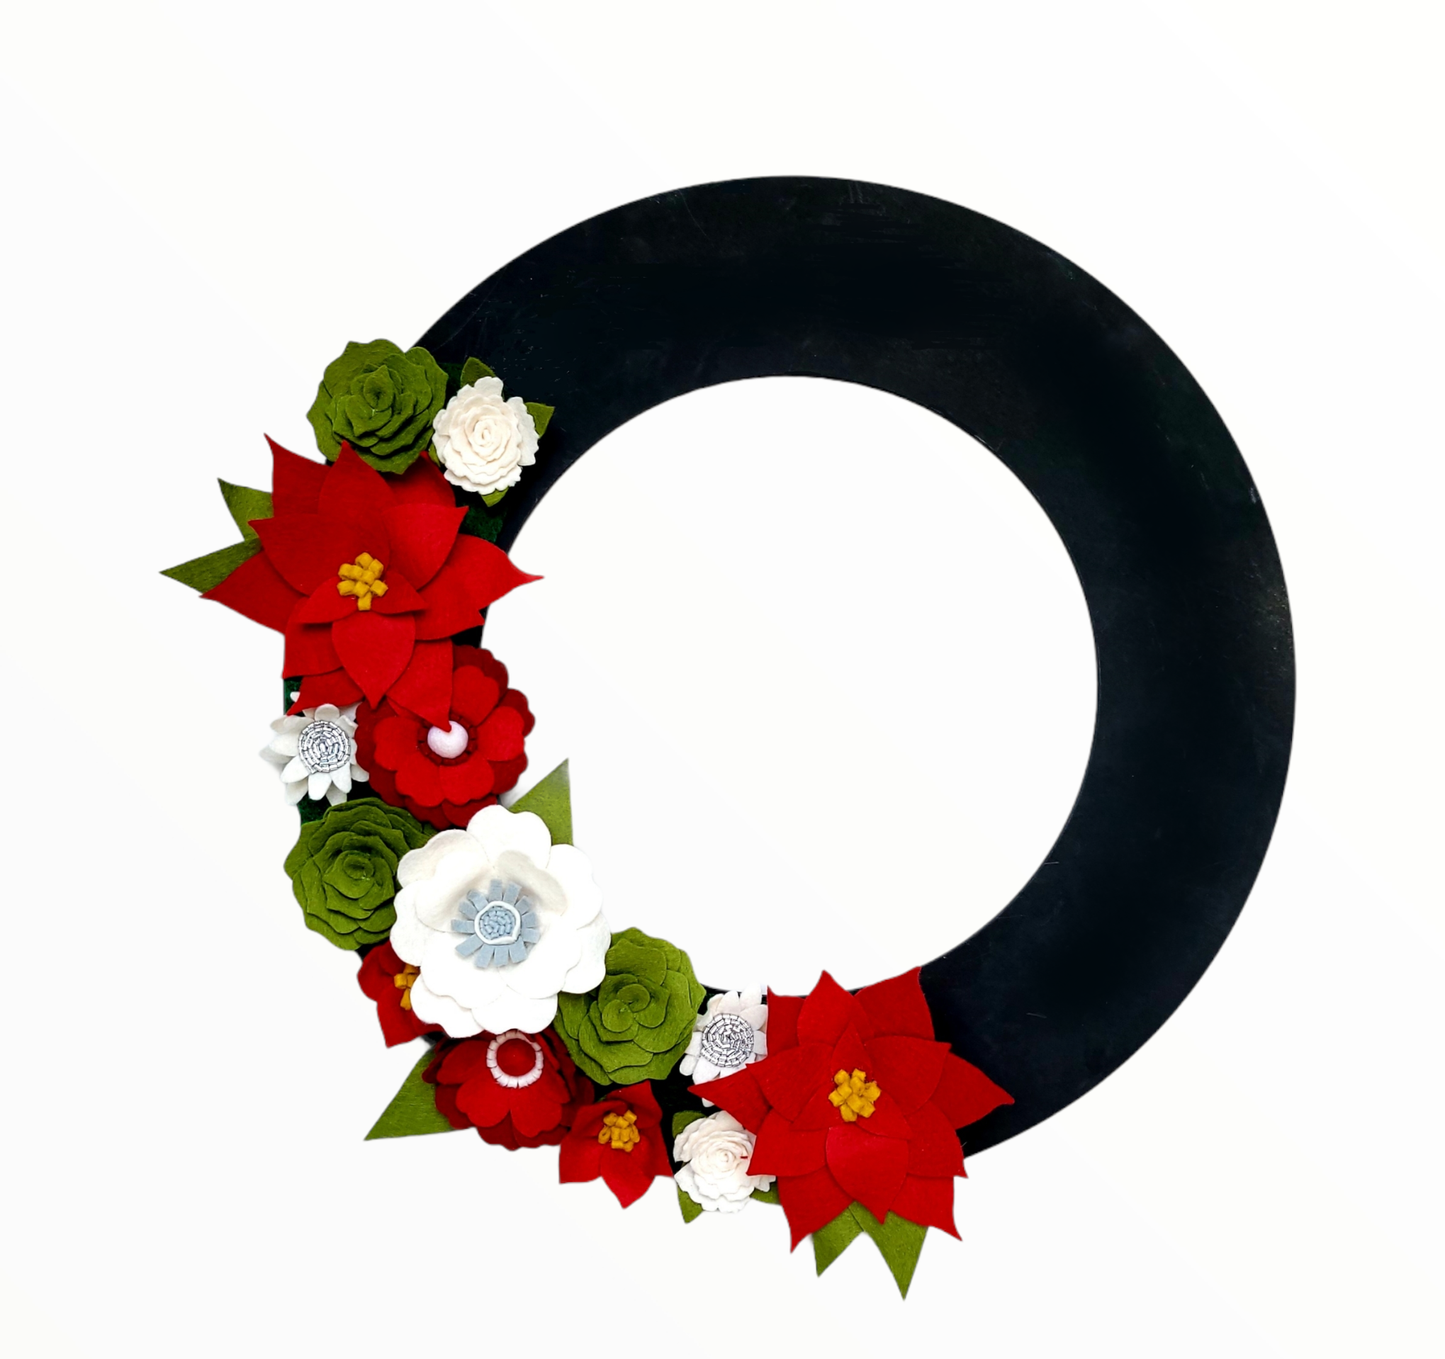 Custom, interchangeable, eco-friendly holiday Christmas wreath attachment on a black wreath base - ADORND Décor